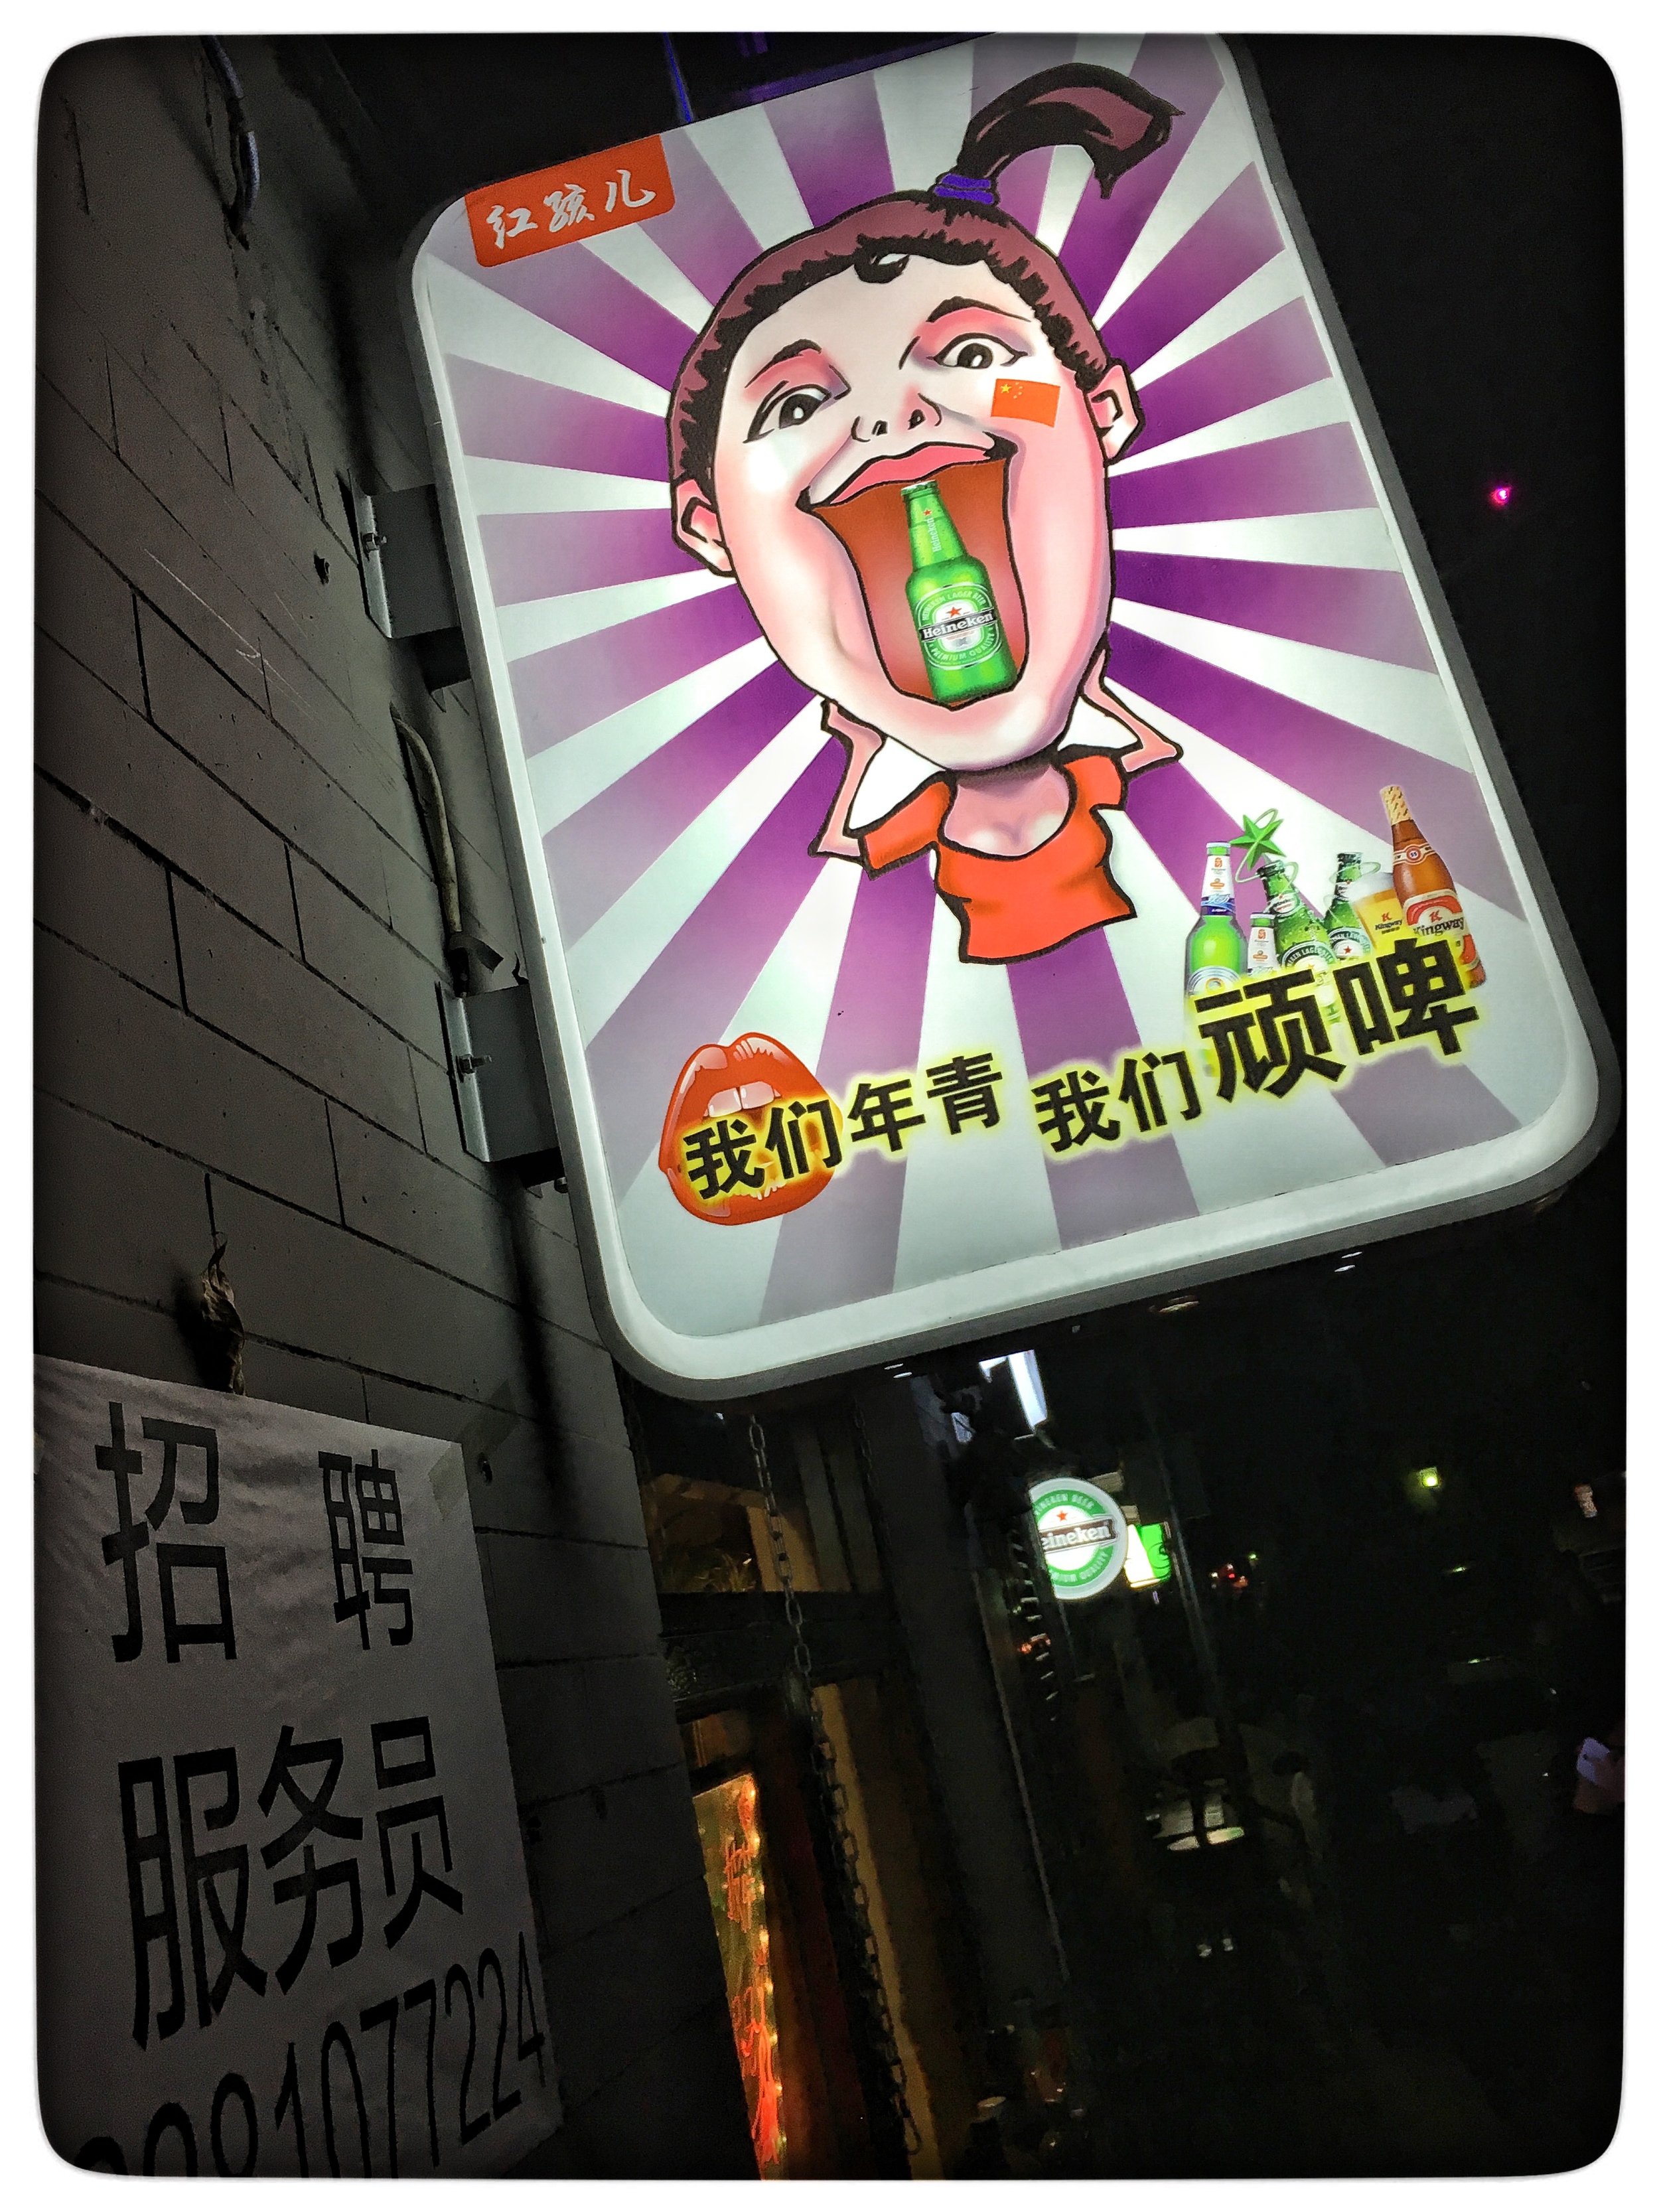  Bar sign, Beijing 